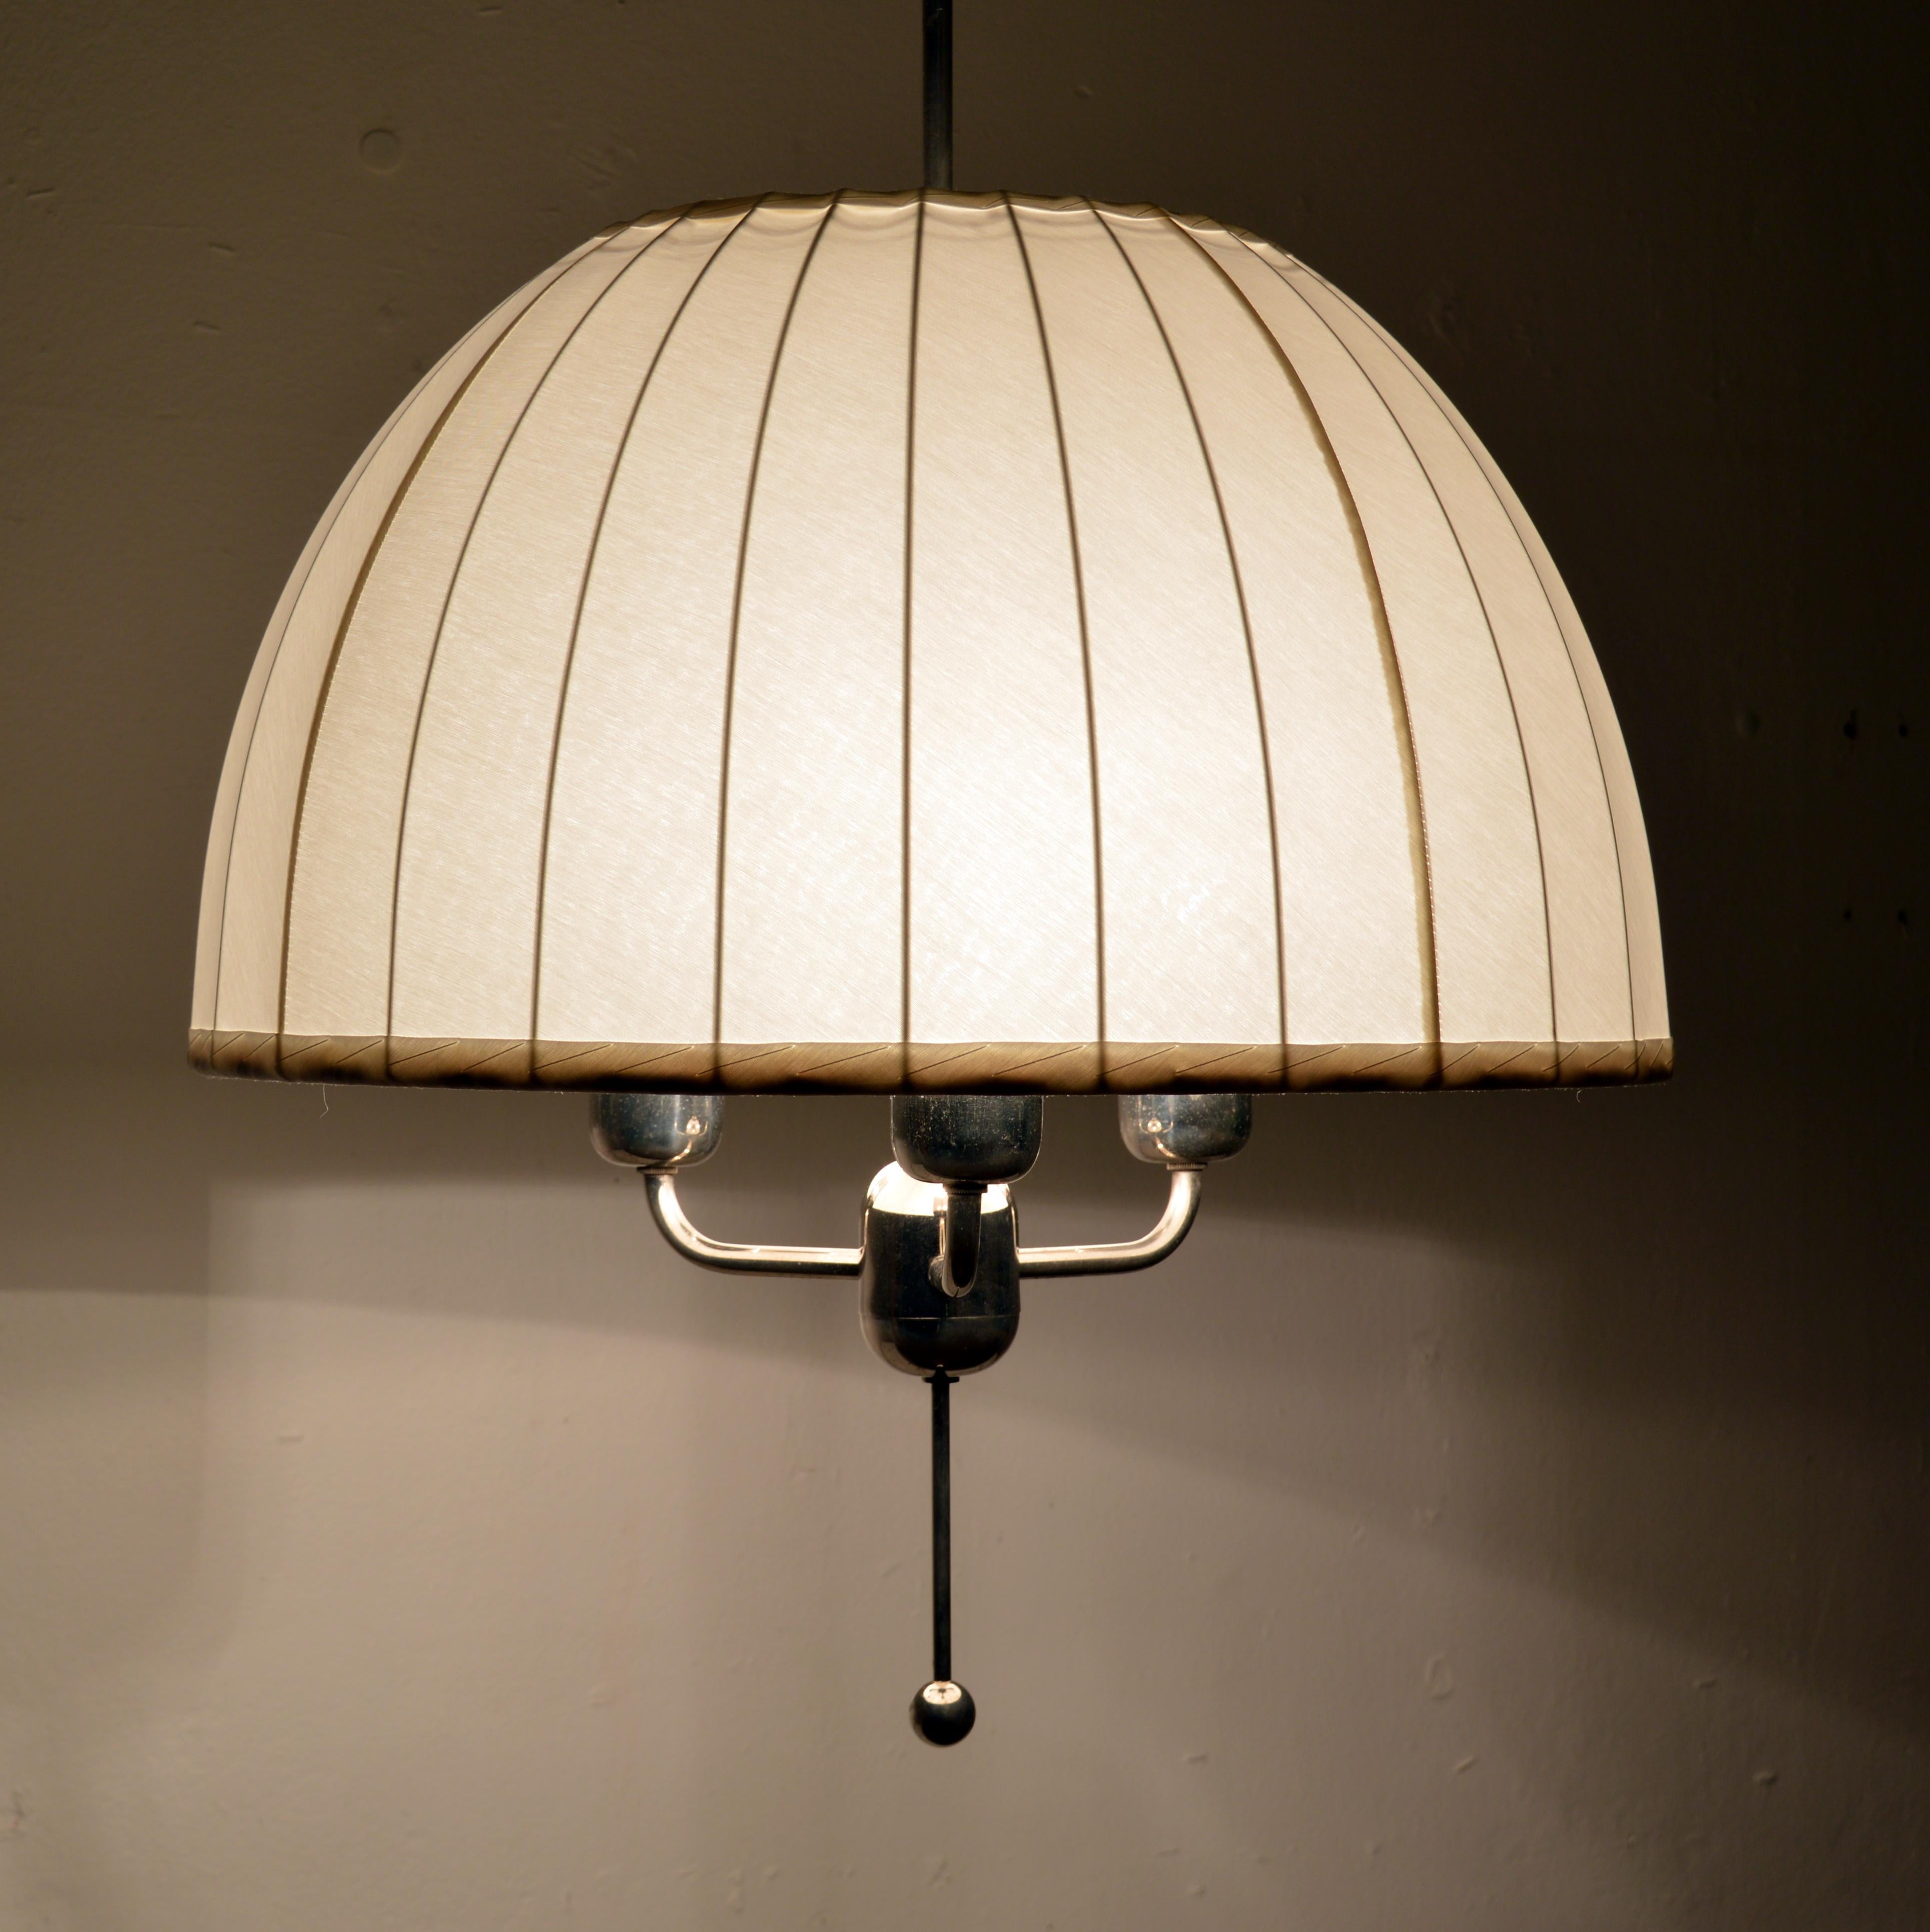 Merveilleuse lampe suspendue 'Caroline' modèle T549/3 conçue en 1963 par Hans-Agne Jakobsson pour sa propre entreprise à Markaryd, Suède. Un cadre nickelé avec un abat-jour d'origine nouvellement redressé dans un magnifique tissu de chintz blanc